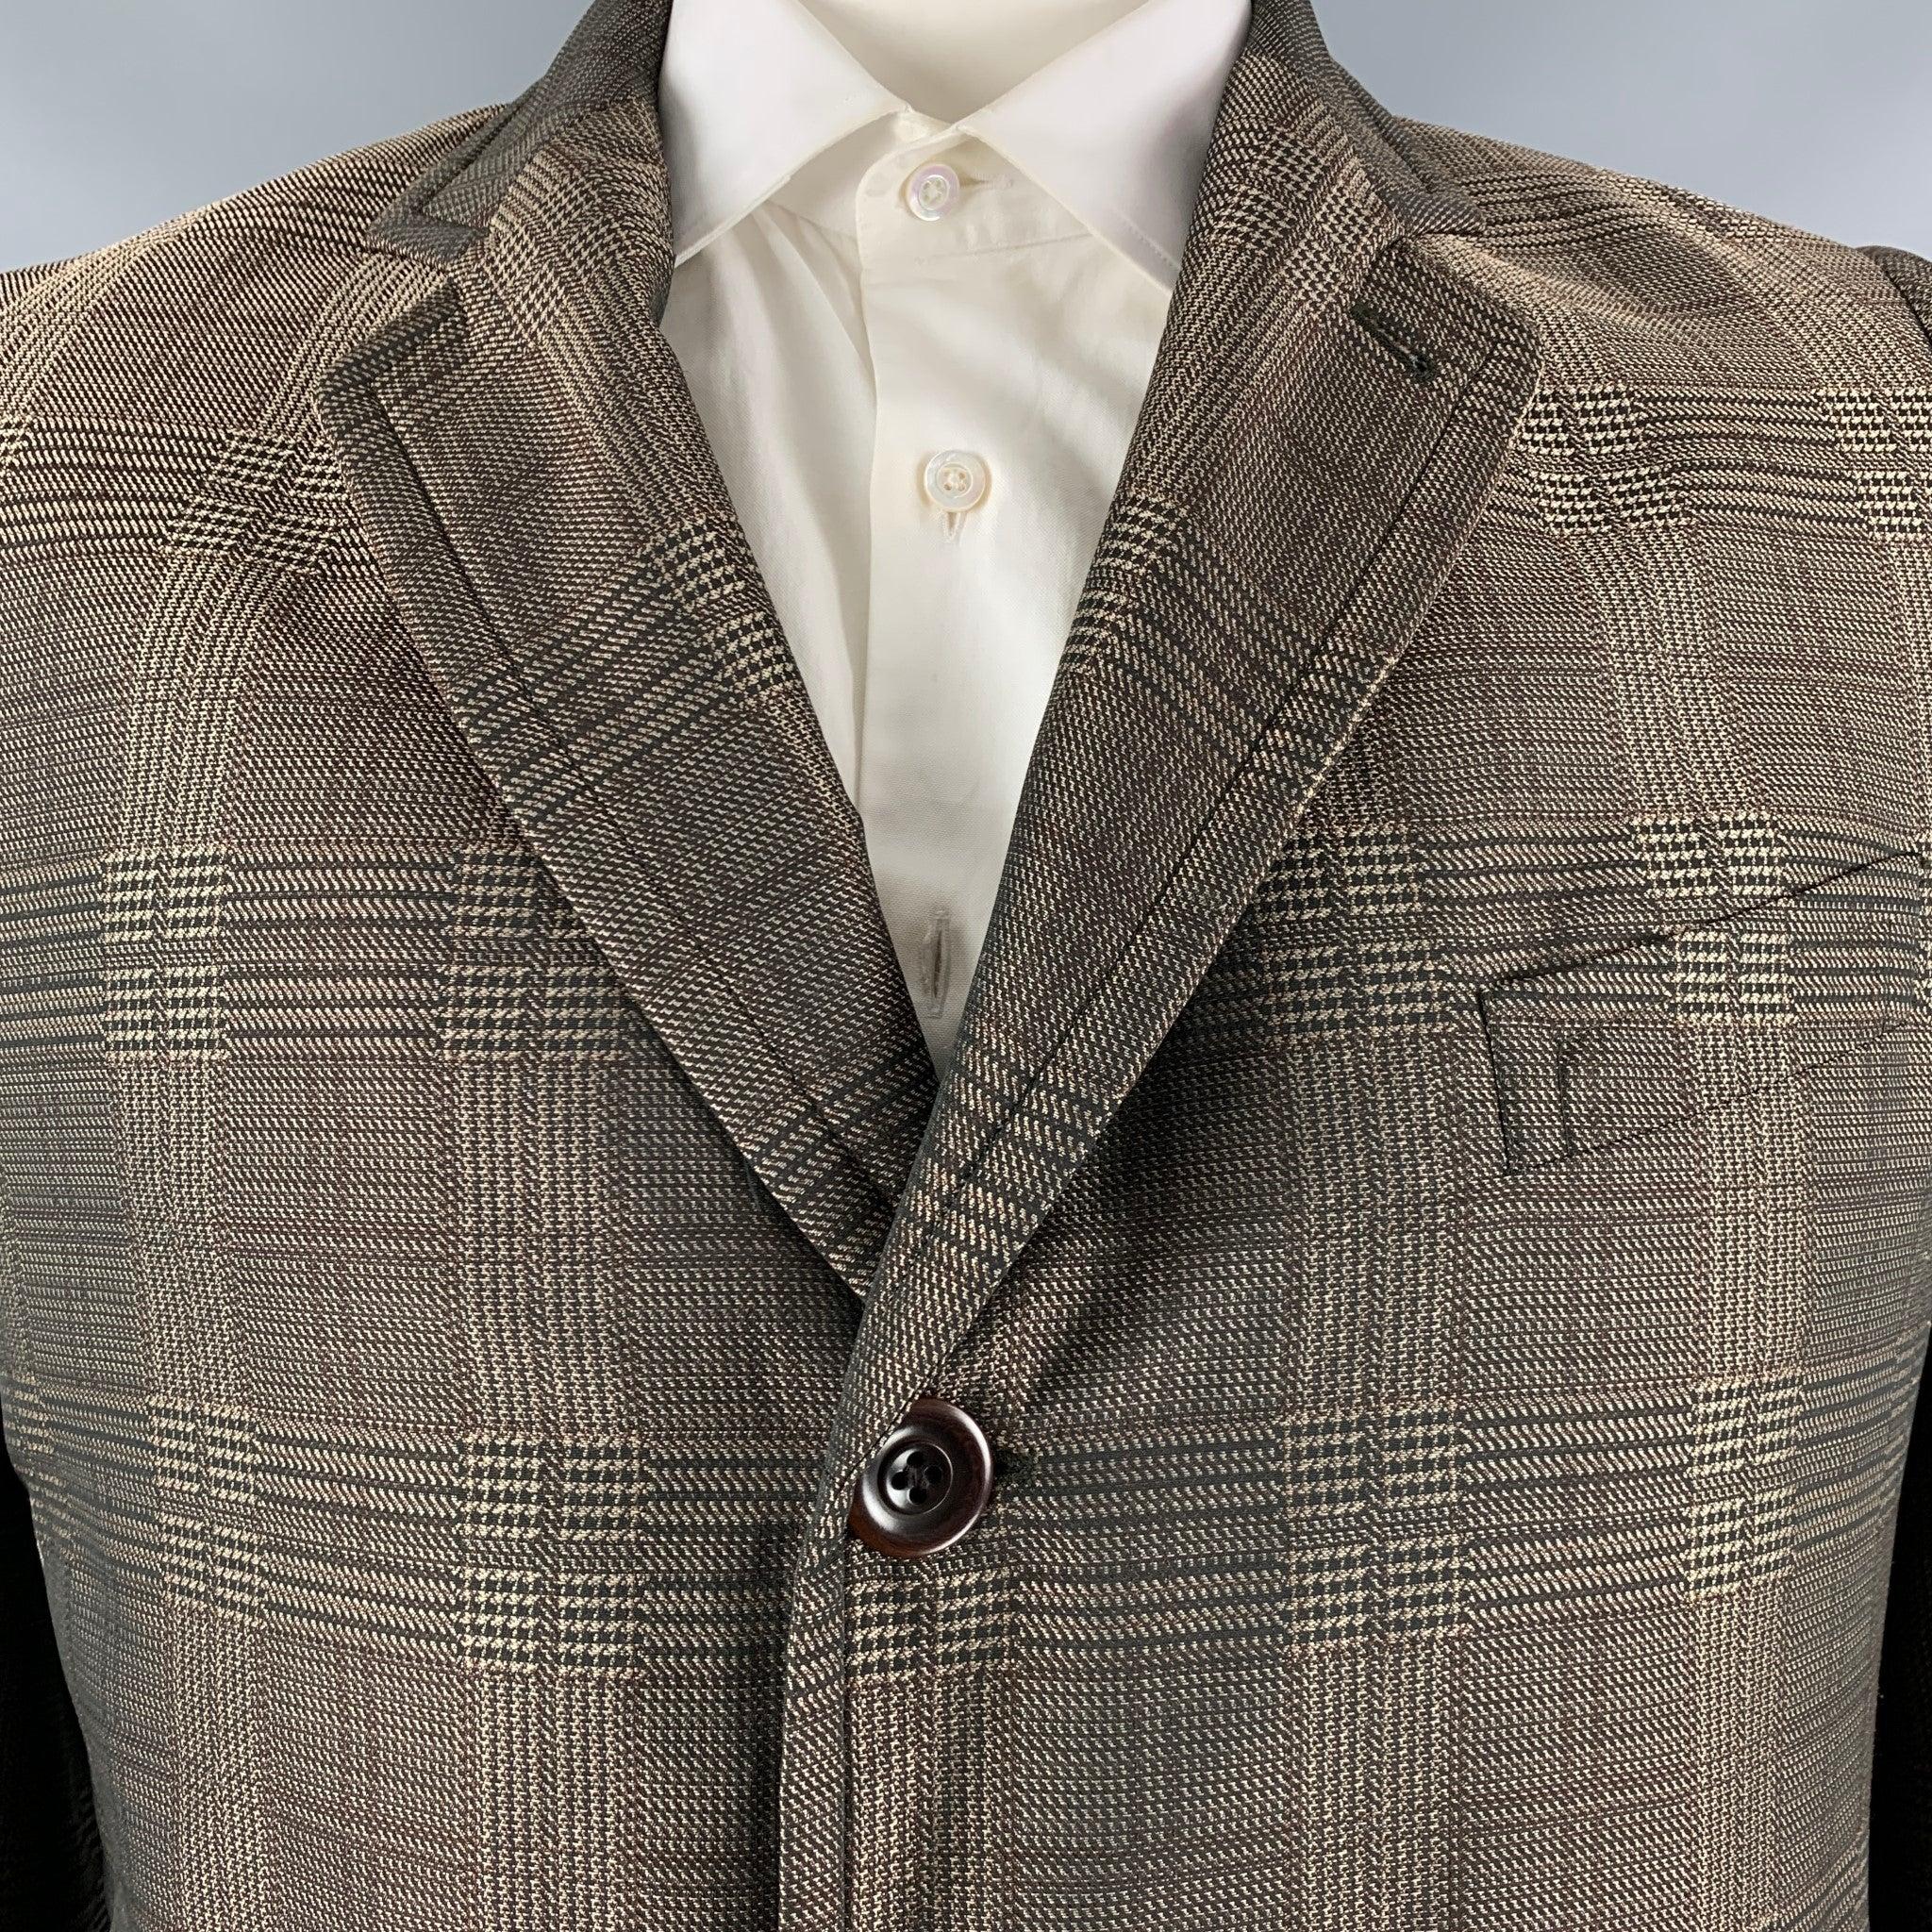 Le manteau DRIES VAN NOTEN est réalisé en polyester tissé glenplaid marron et taupe avec une doublure en tissu écossais gris. Il présente un revers échancré, une poitrine simple, un double boutonnage et des poches passepoilées. Fabriqué en Belgique.